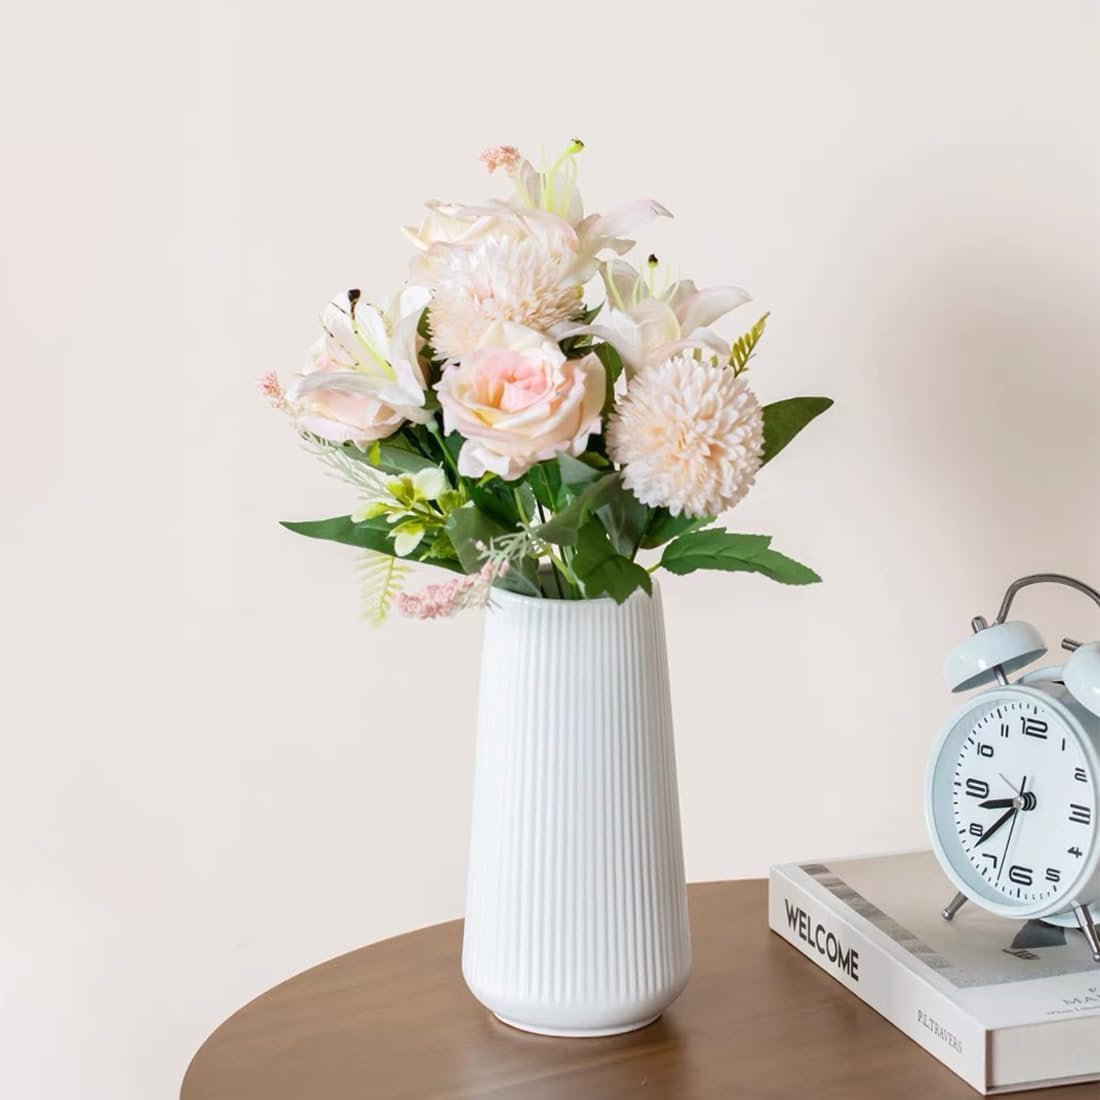 Elegant White Plastic Flower Vase Perfect for Home Decor set of 1''